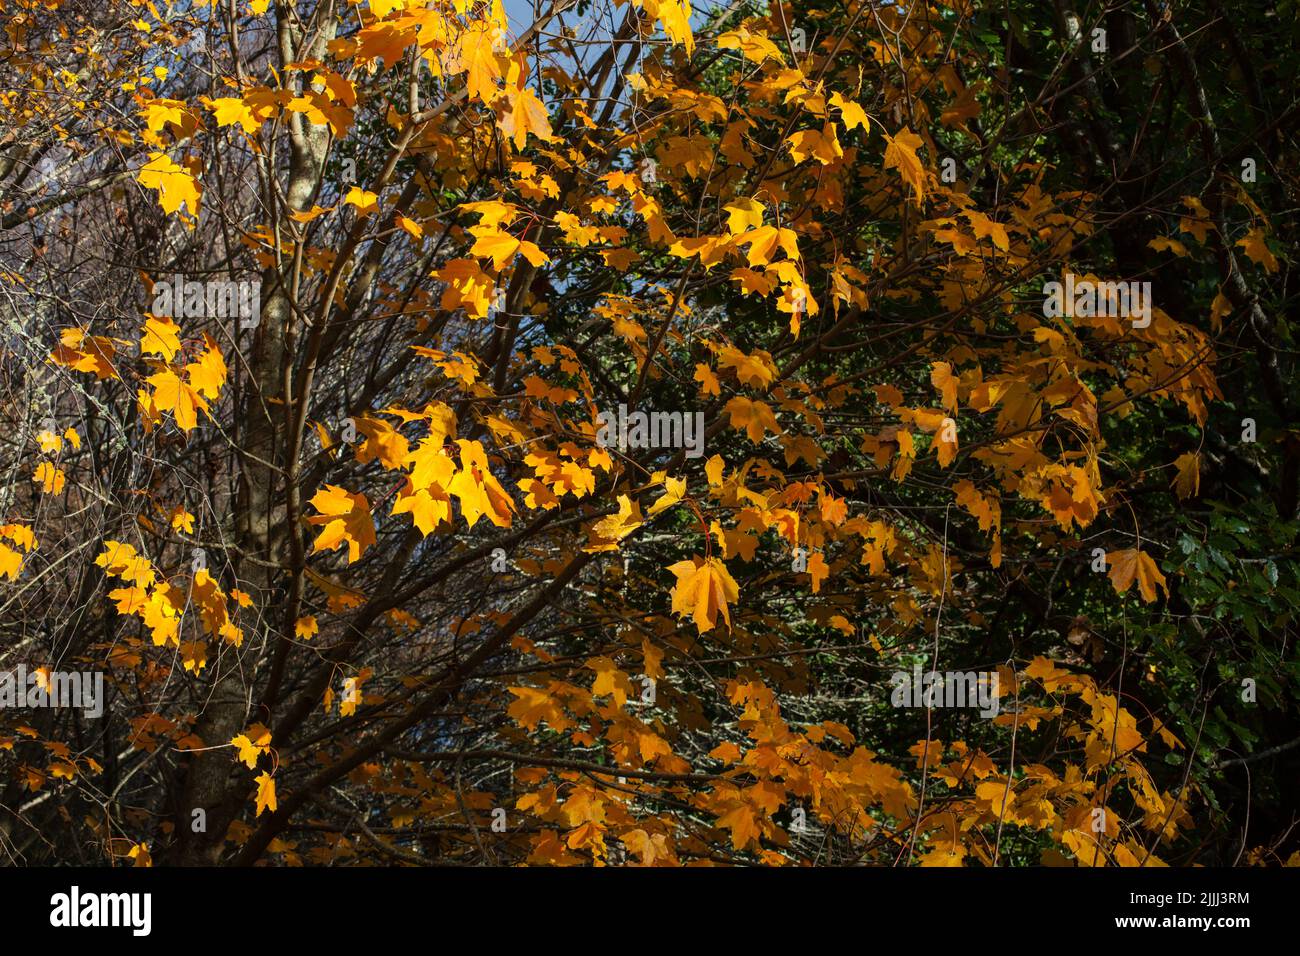 Uno sguardo alla vita in Nuova Zelanda: Una passeggiata nei boschi in autunno. Colori meravigliosi. Foto Stock